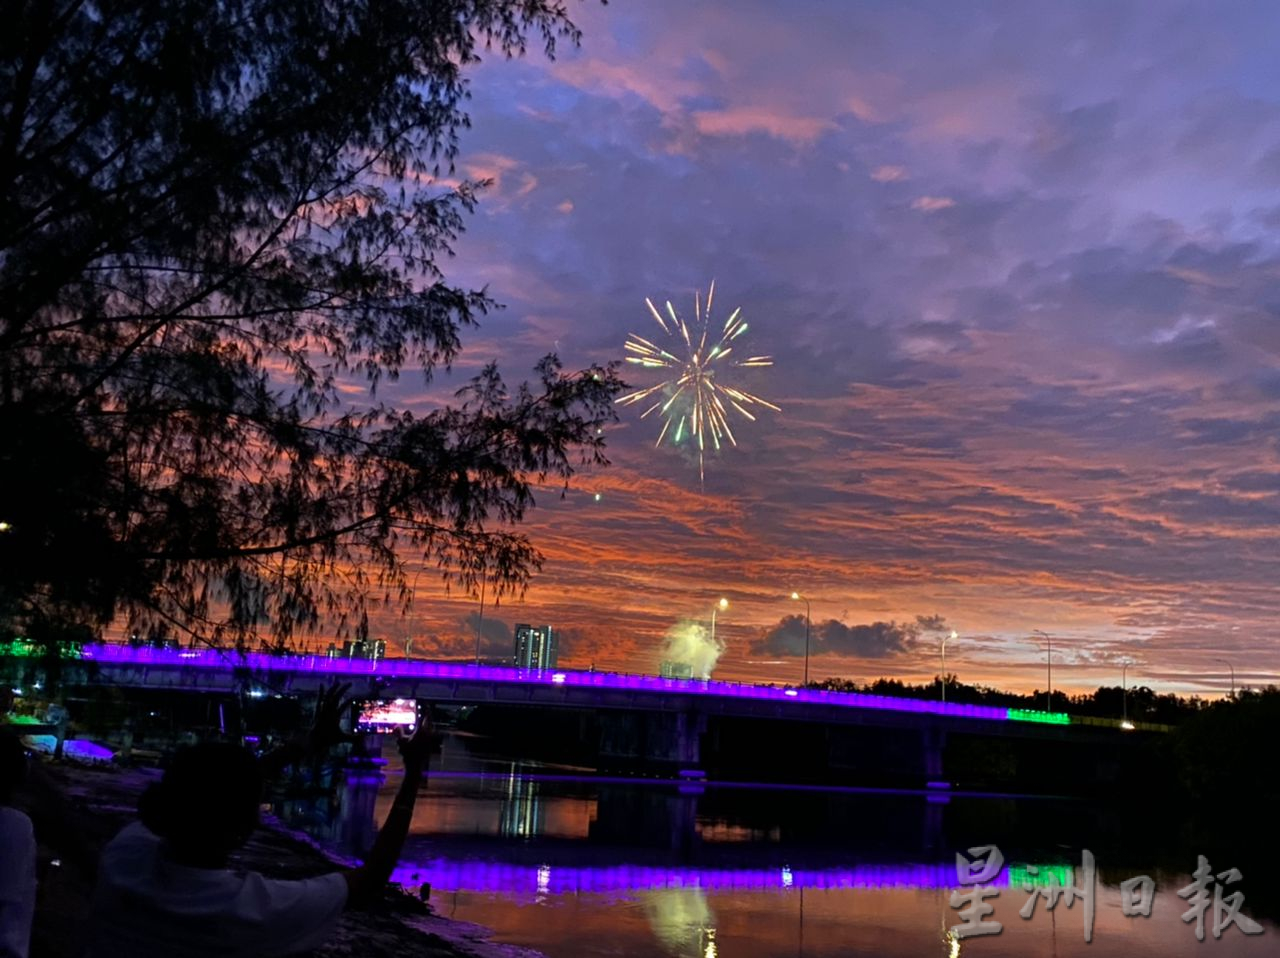 （大北马）横跨北赖河的东姑桥栏杆首次被披上变色彩灯喜迎国庆日。